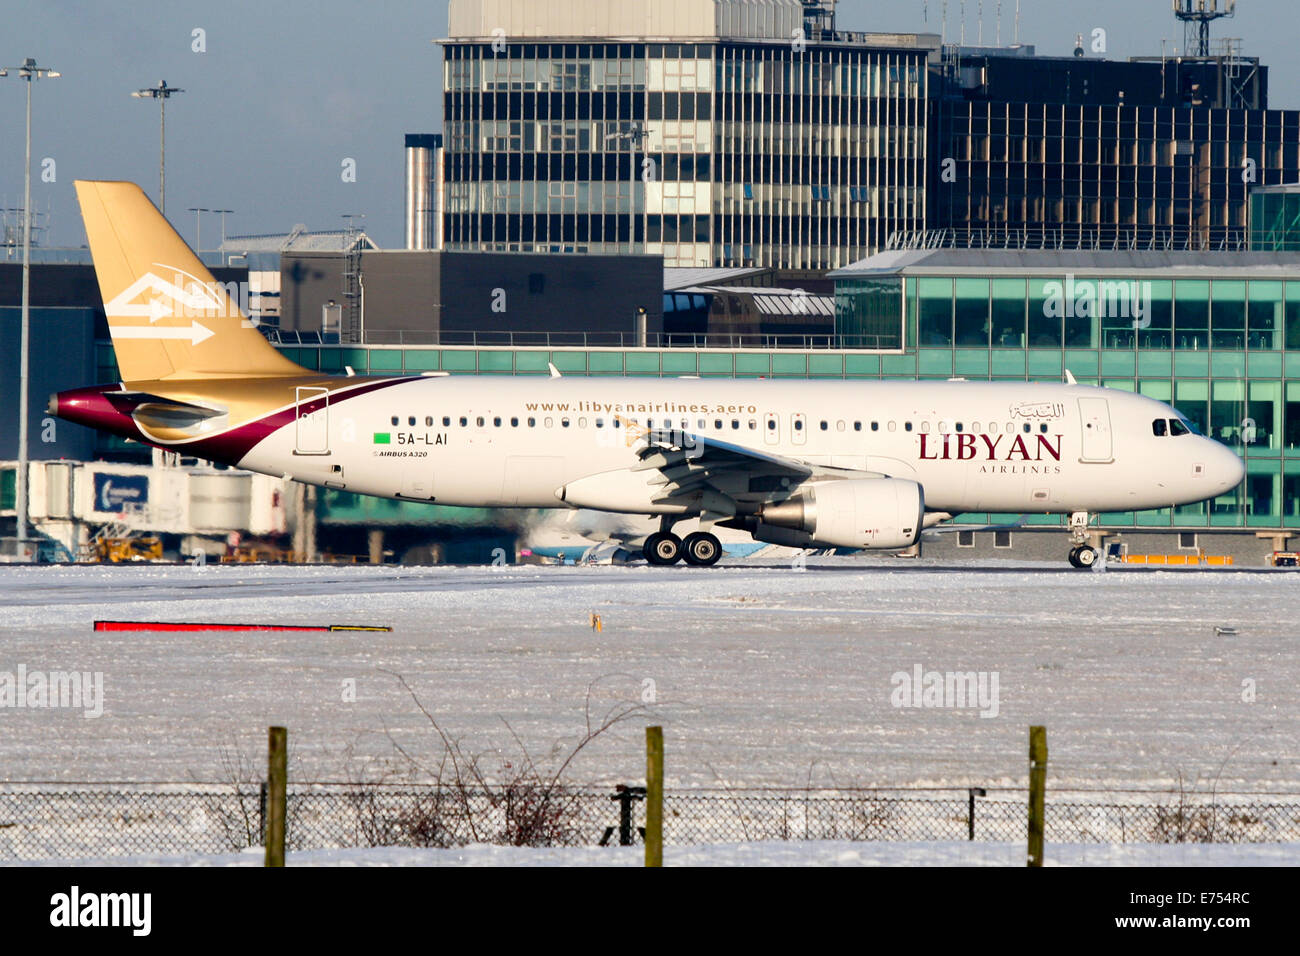 Libyan Airlines Airbus A320 arriva in aeroporto di Manchester. Il velivolo è stata distrutta dai ribelli in Libia. Foto Stock